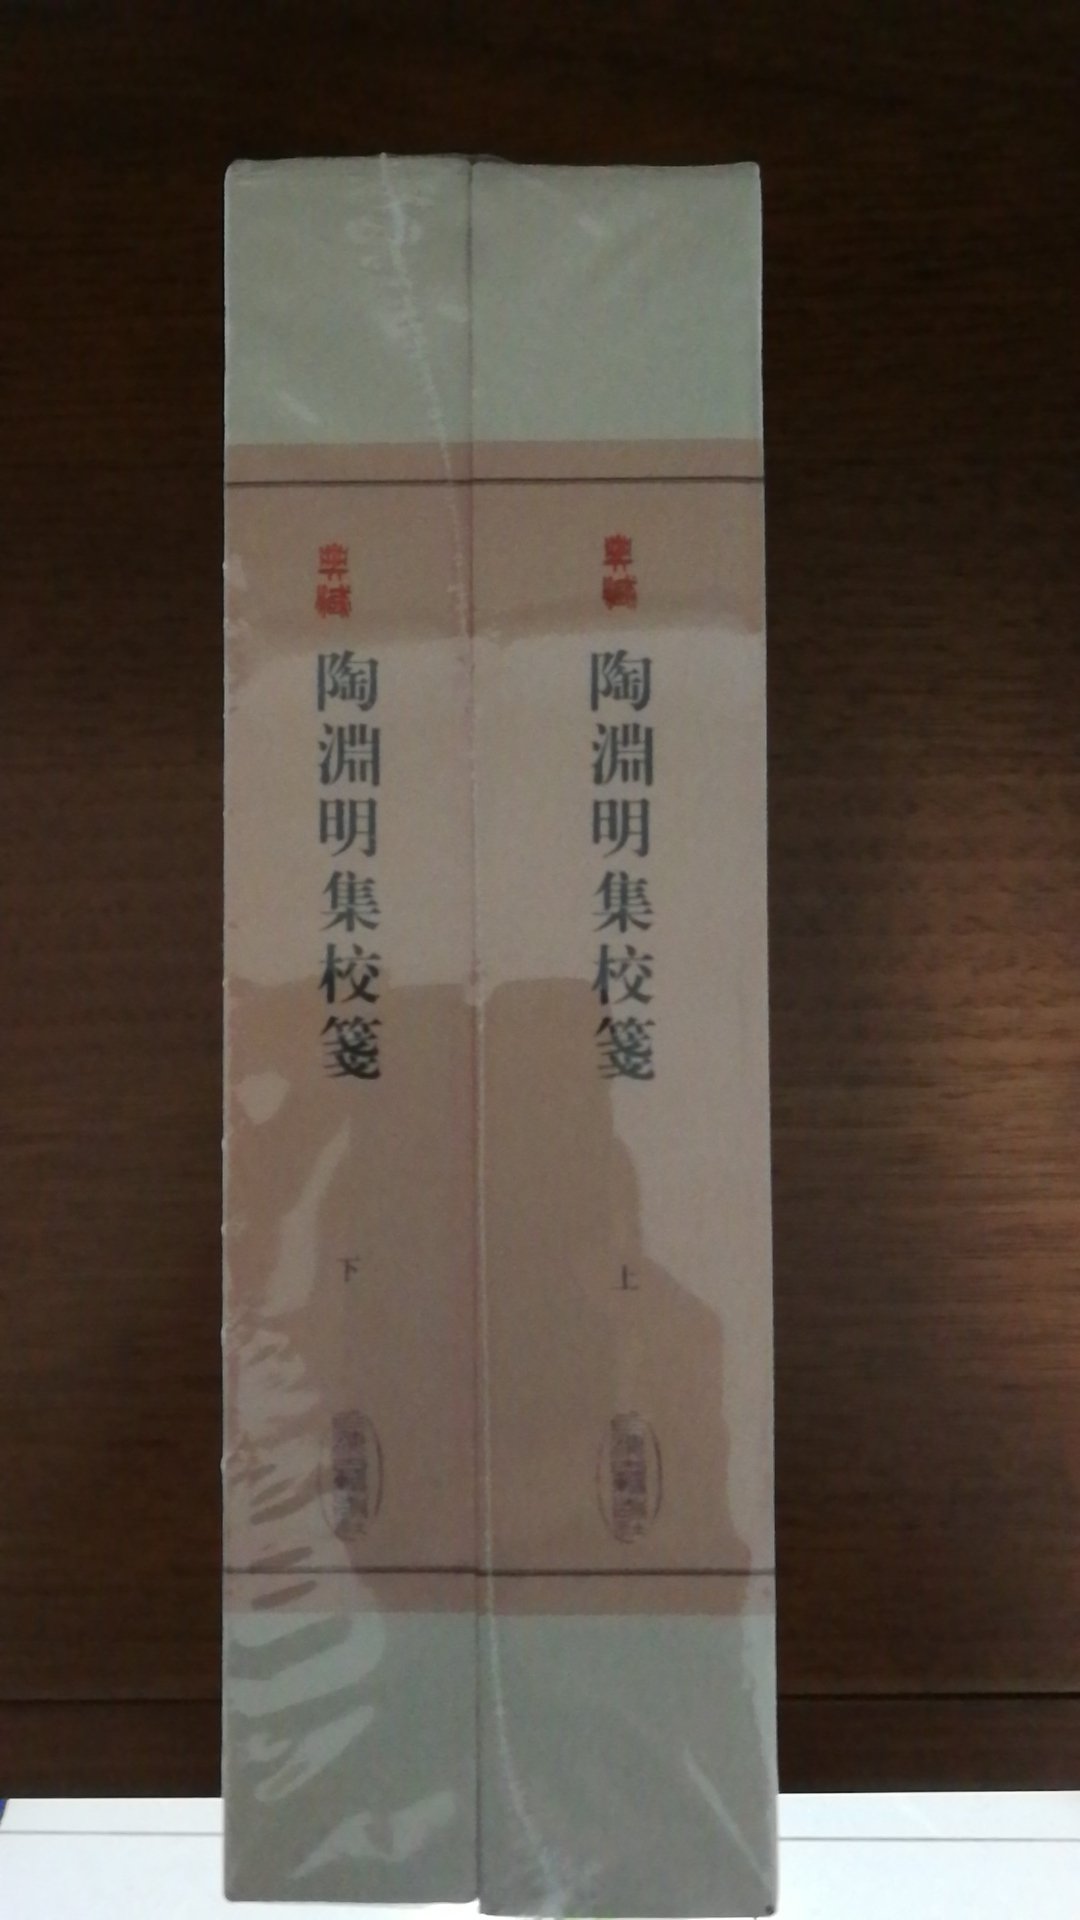 上海古籍出版社推出的陶渊明集校笺，精装16开，书脊锁线纸质优良，排版印刷得体大方，活动期间价格实惠，送货速度快，非常满意。